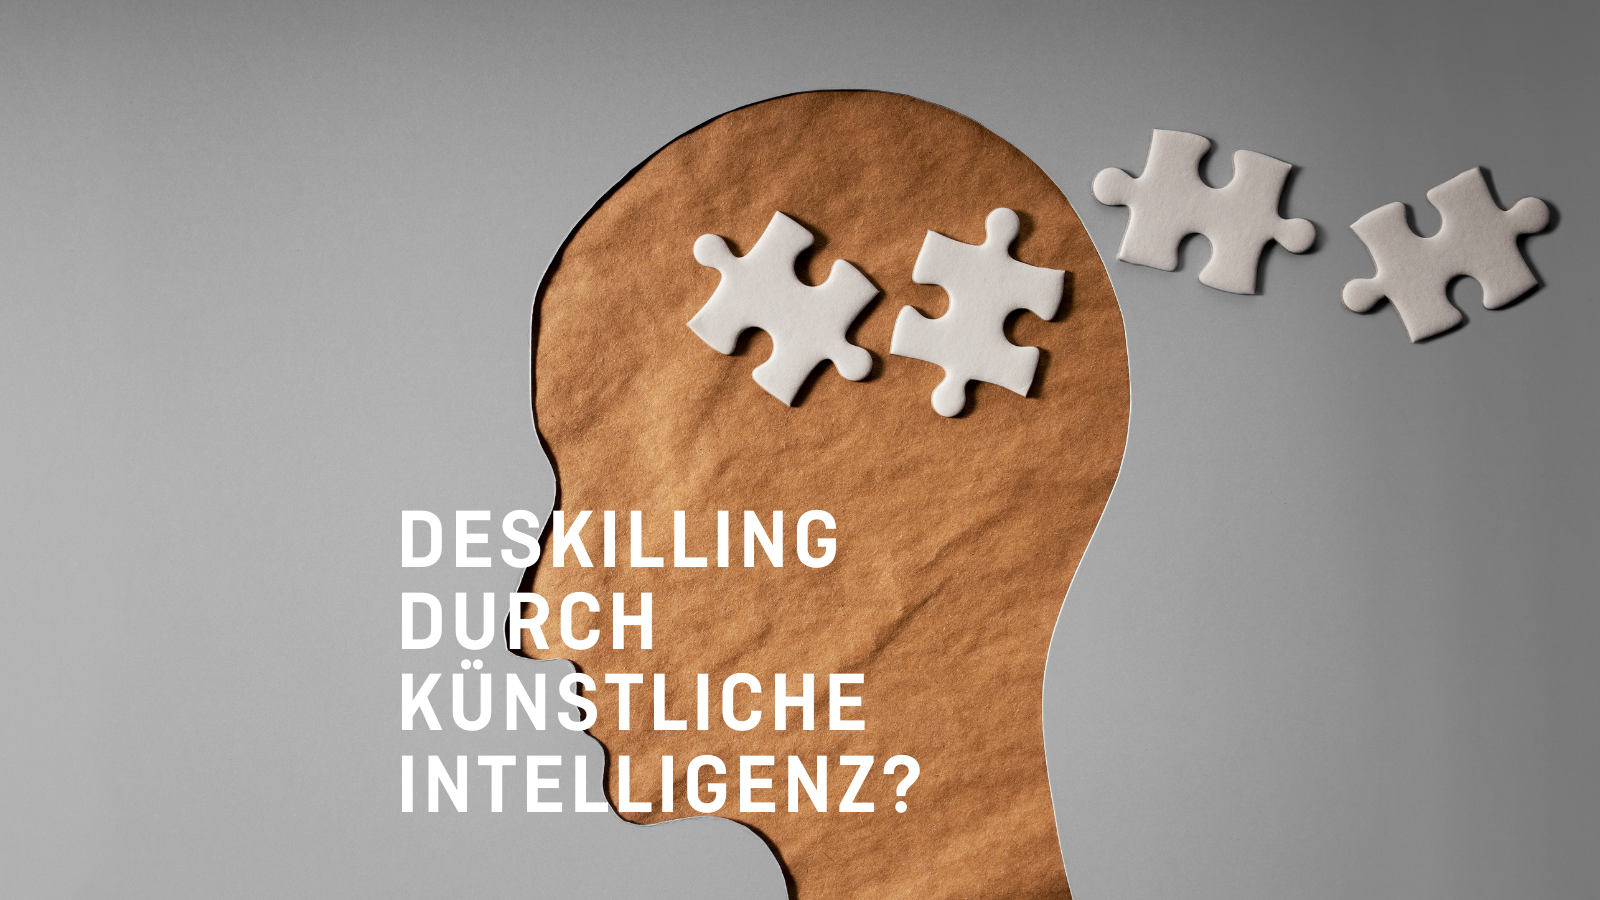 Titelbild für das neue Diskussionspapier "Deskilling durch künstliche Intelligenz?"